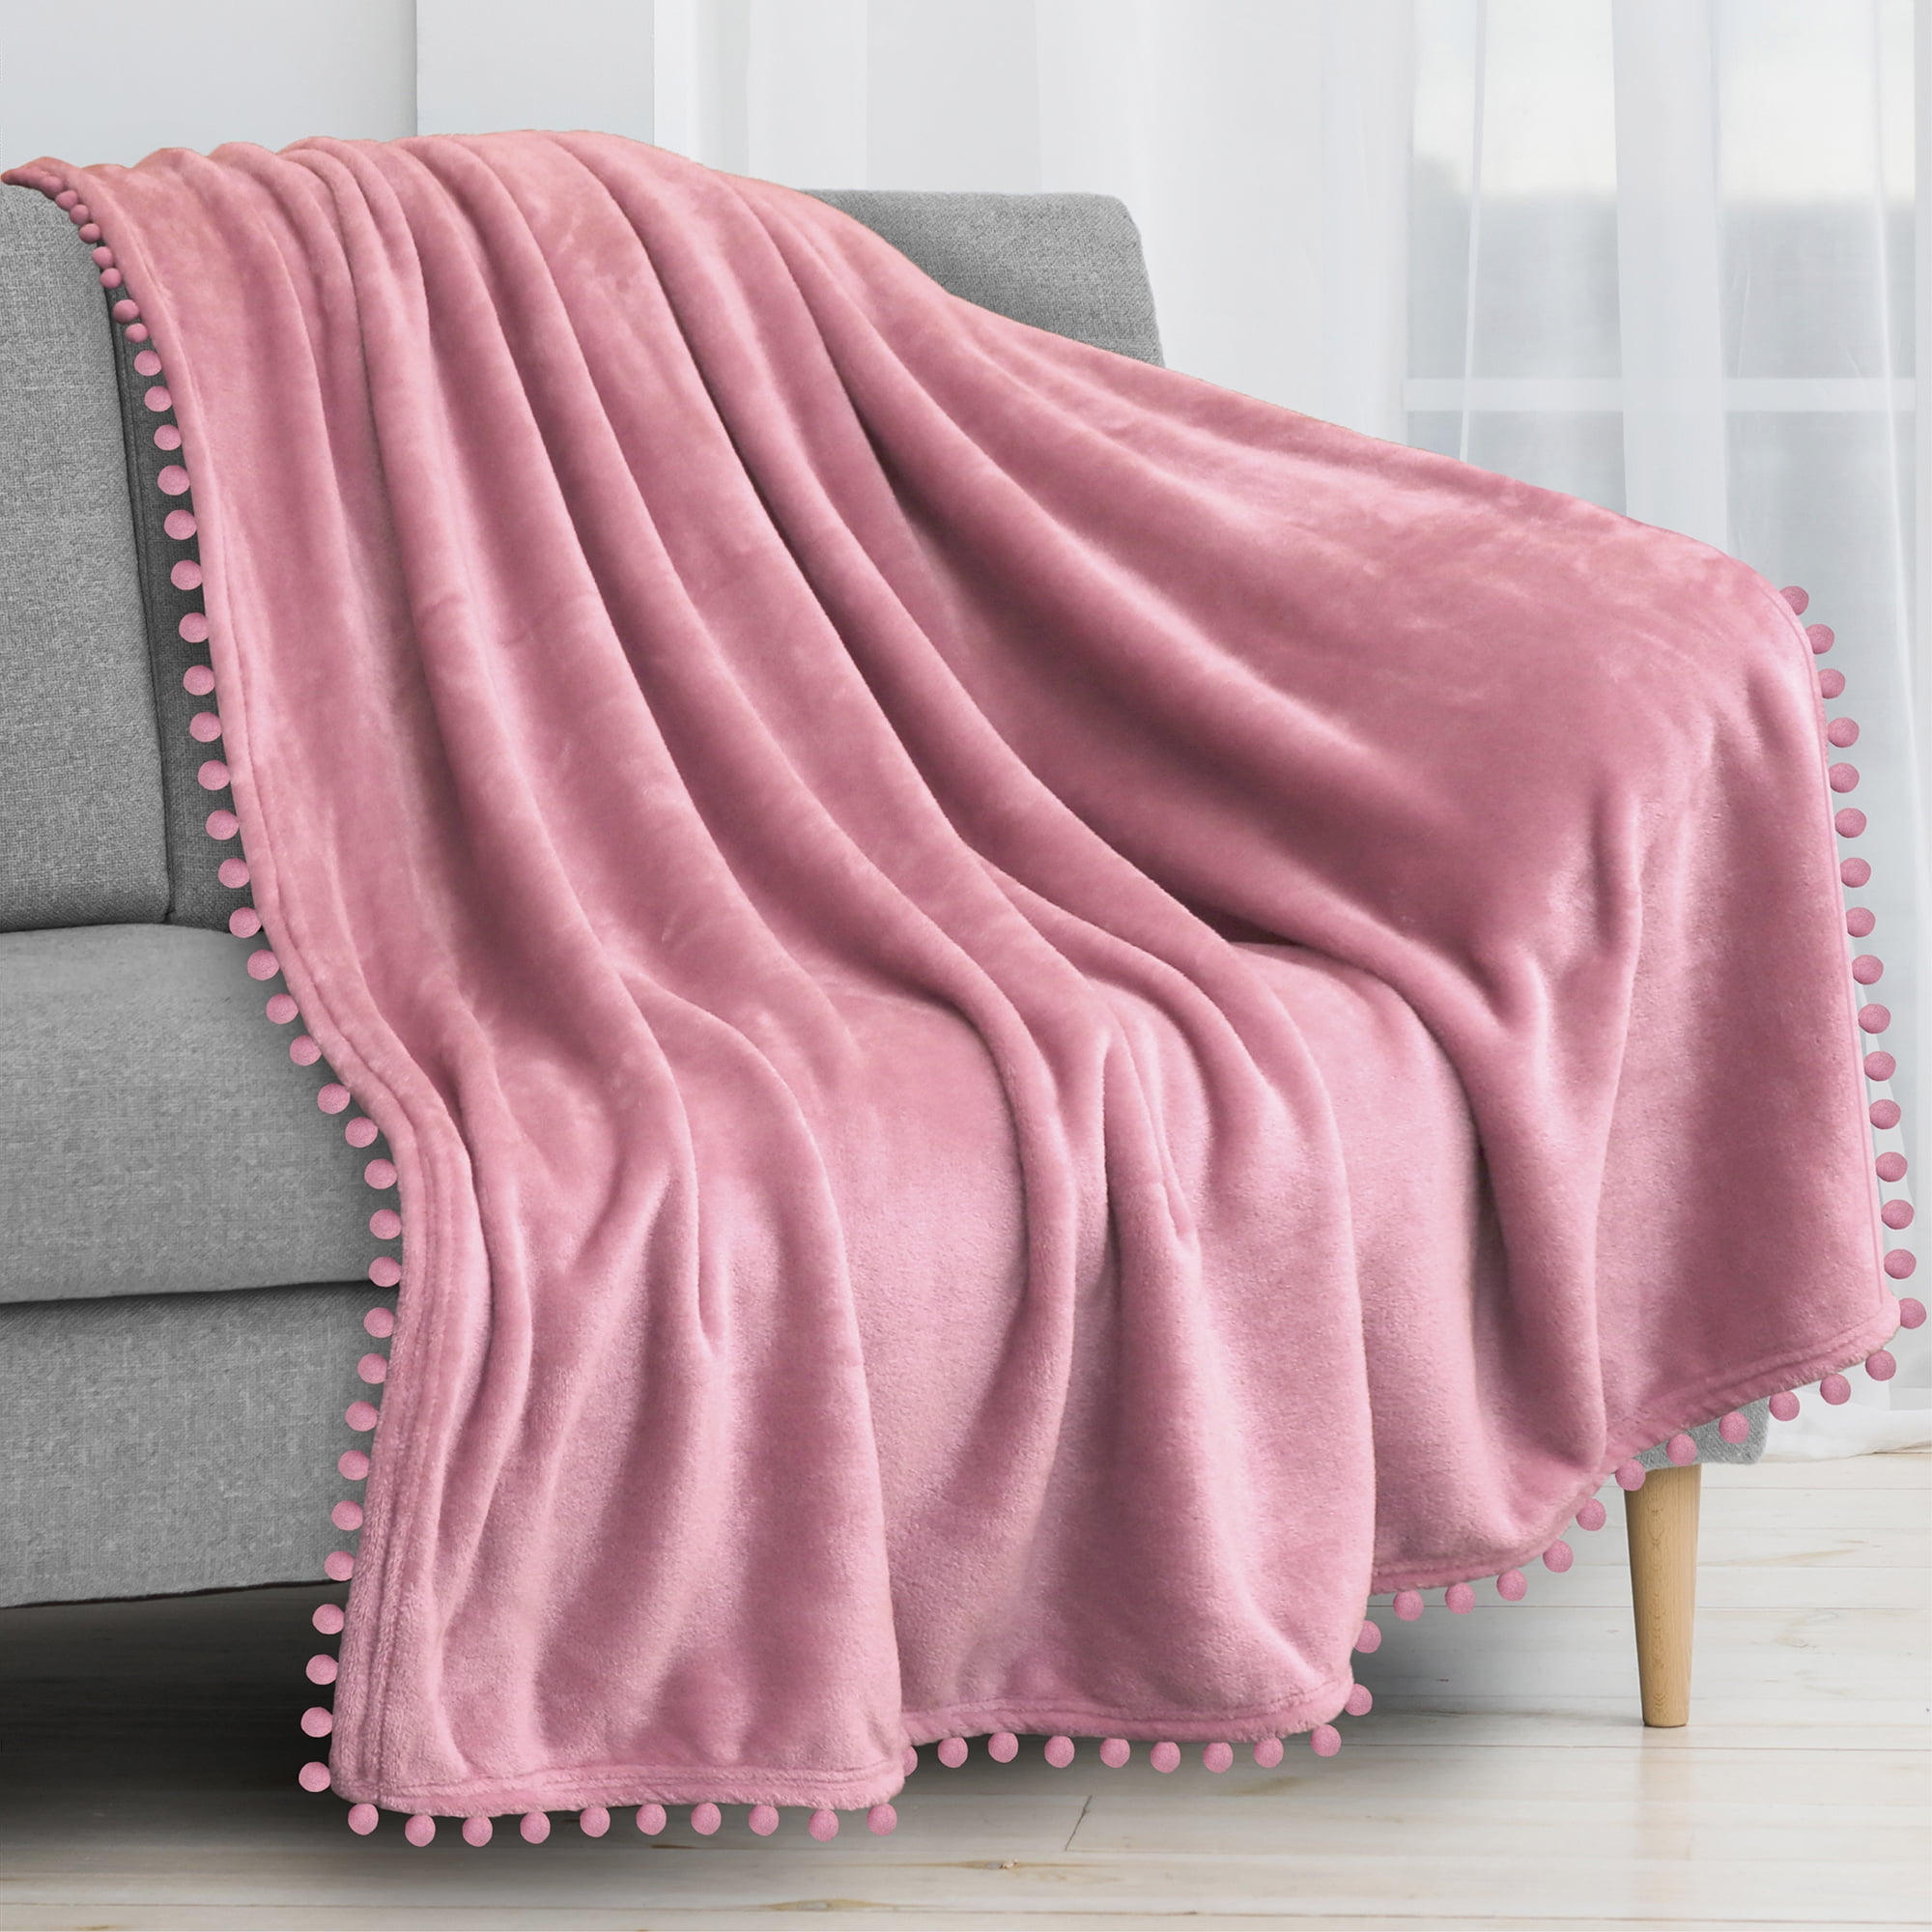 PAVILIA Pom Pom Blanket Throw Twin, Blush Light Pink | Soft Fleece